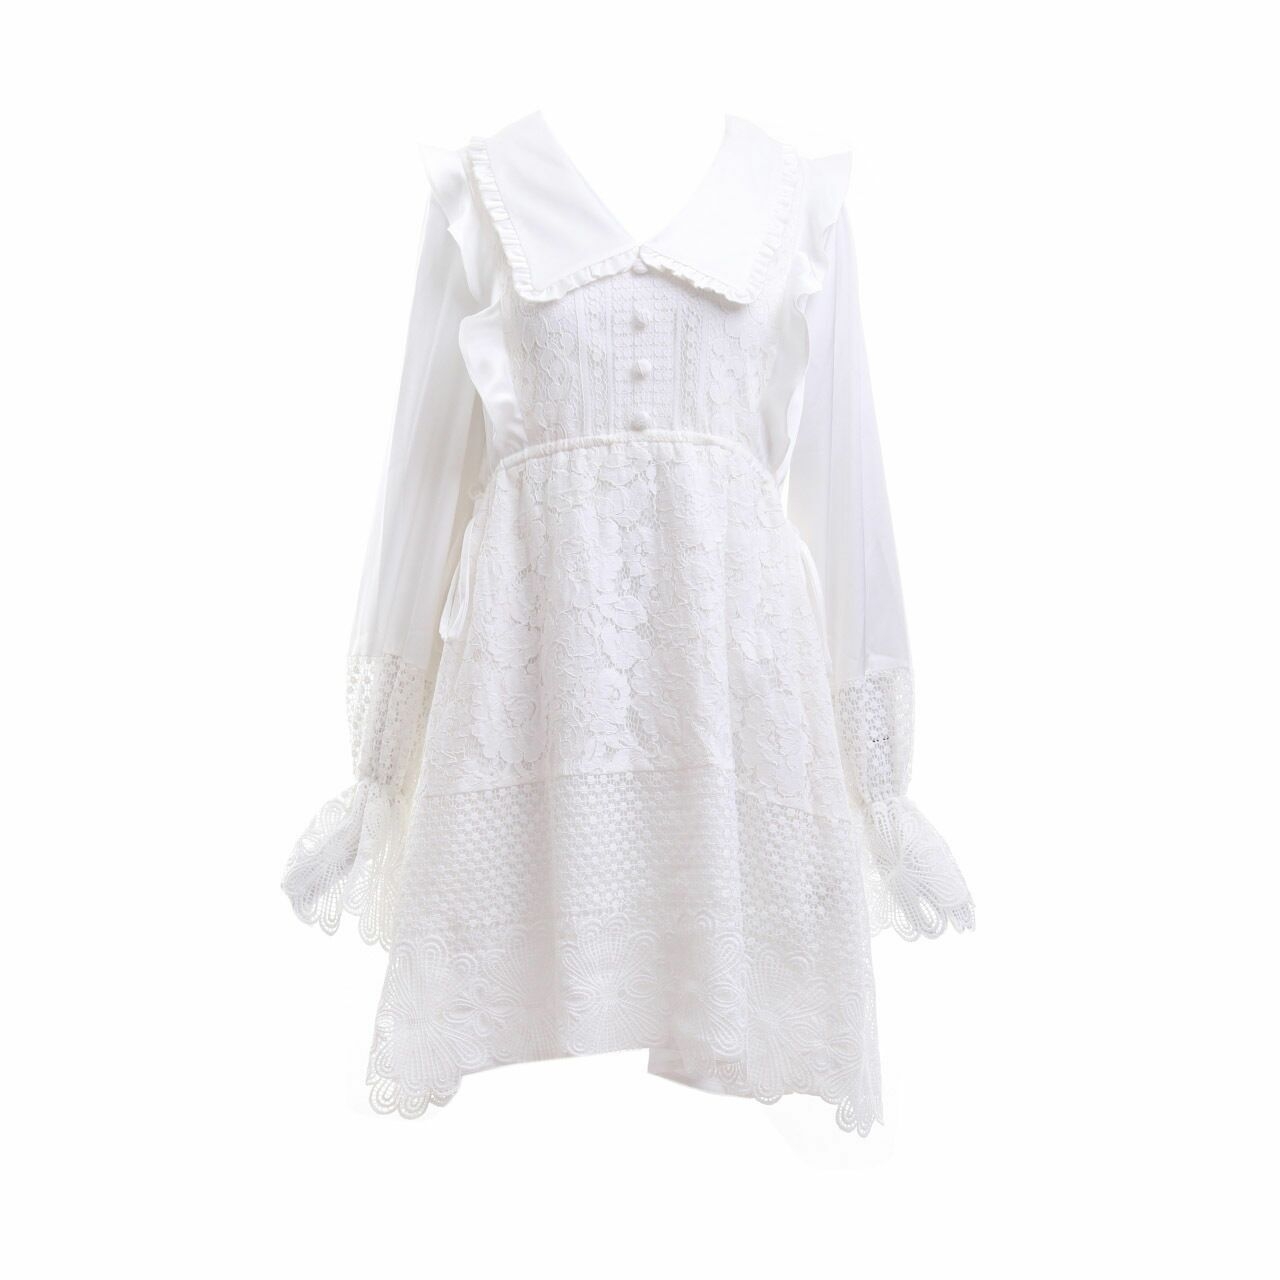 Poshture Off White Lace Mini Dress